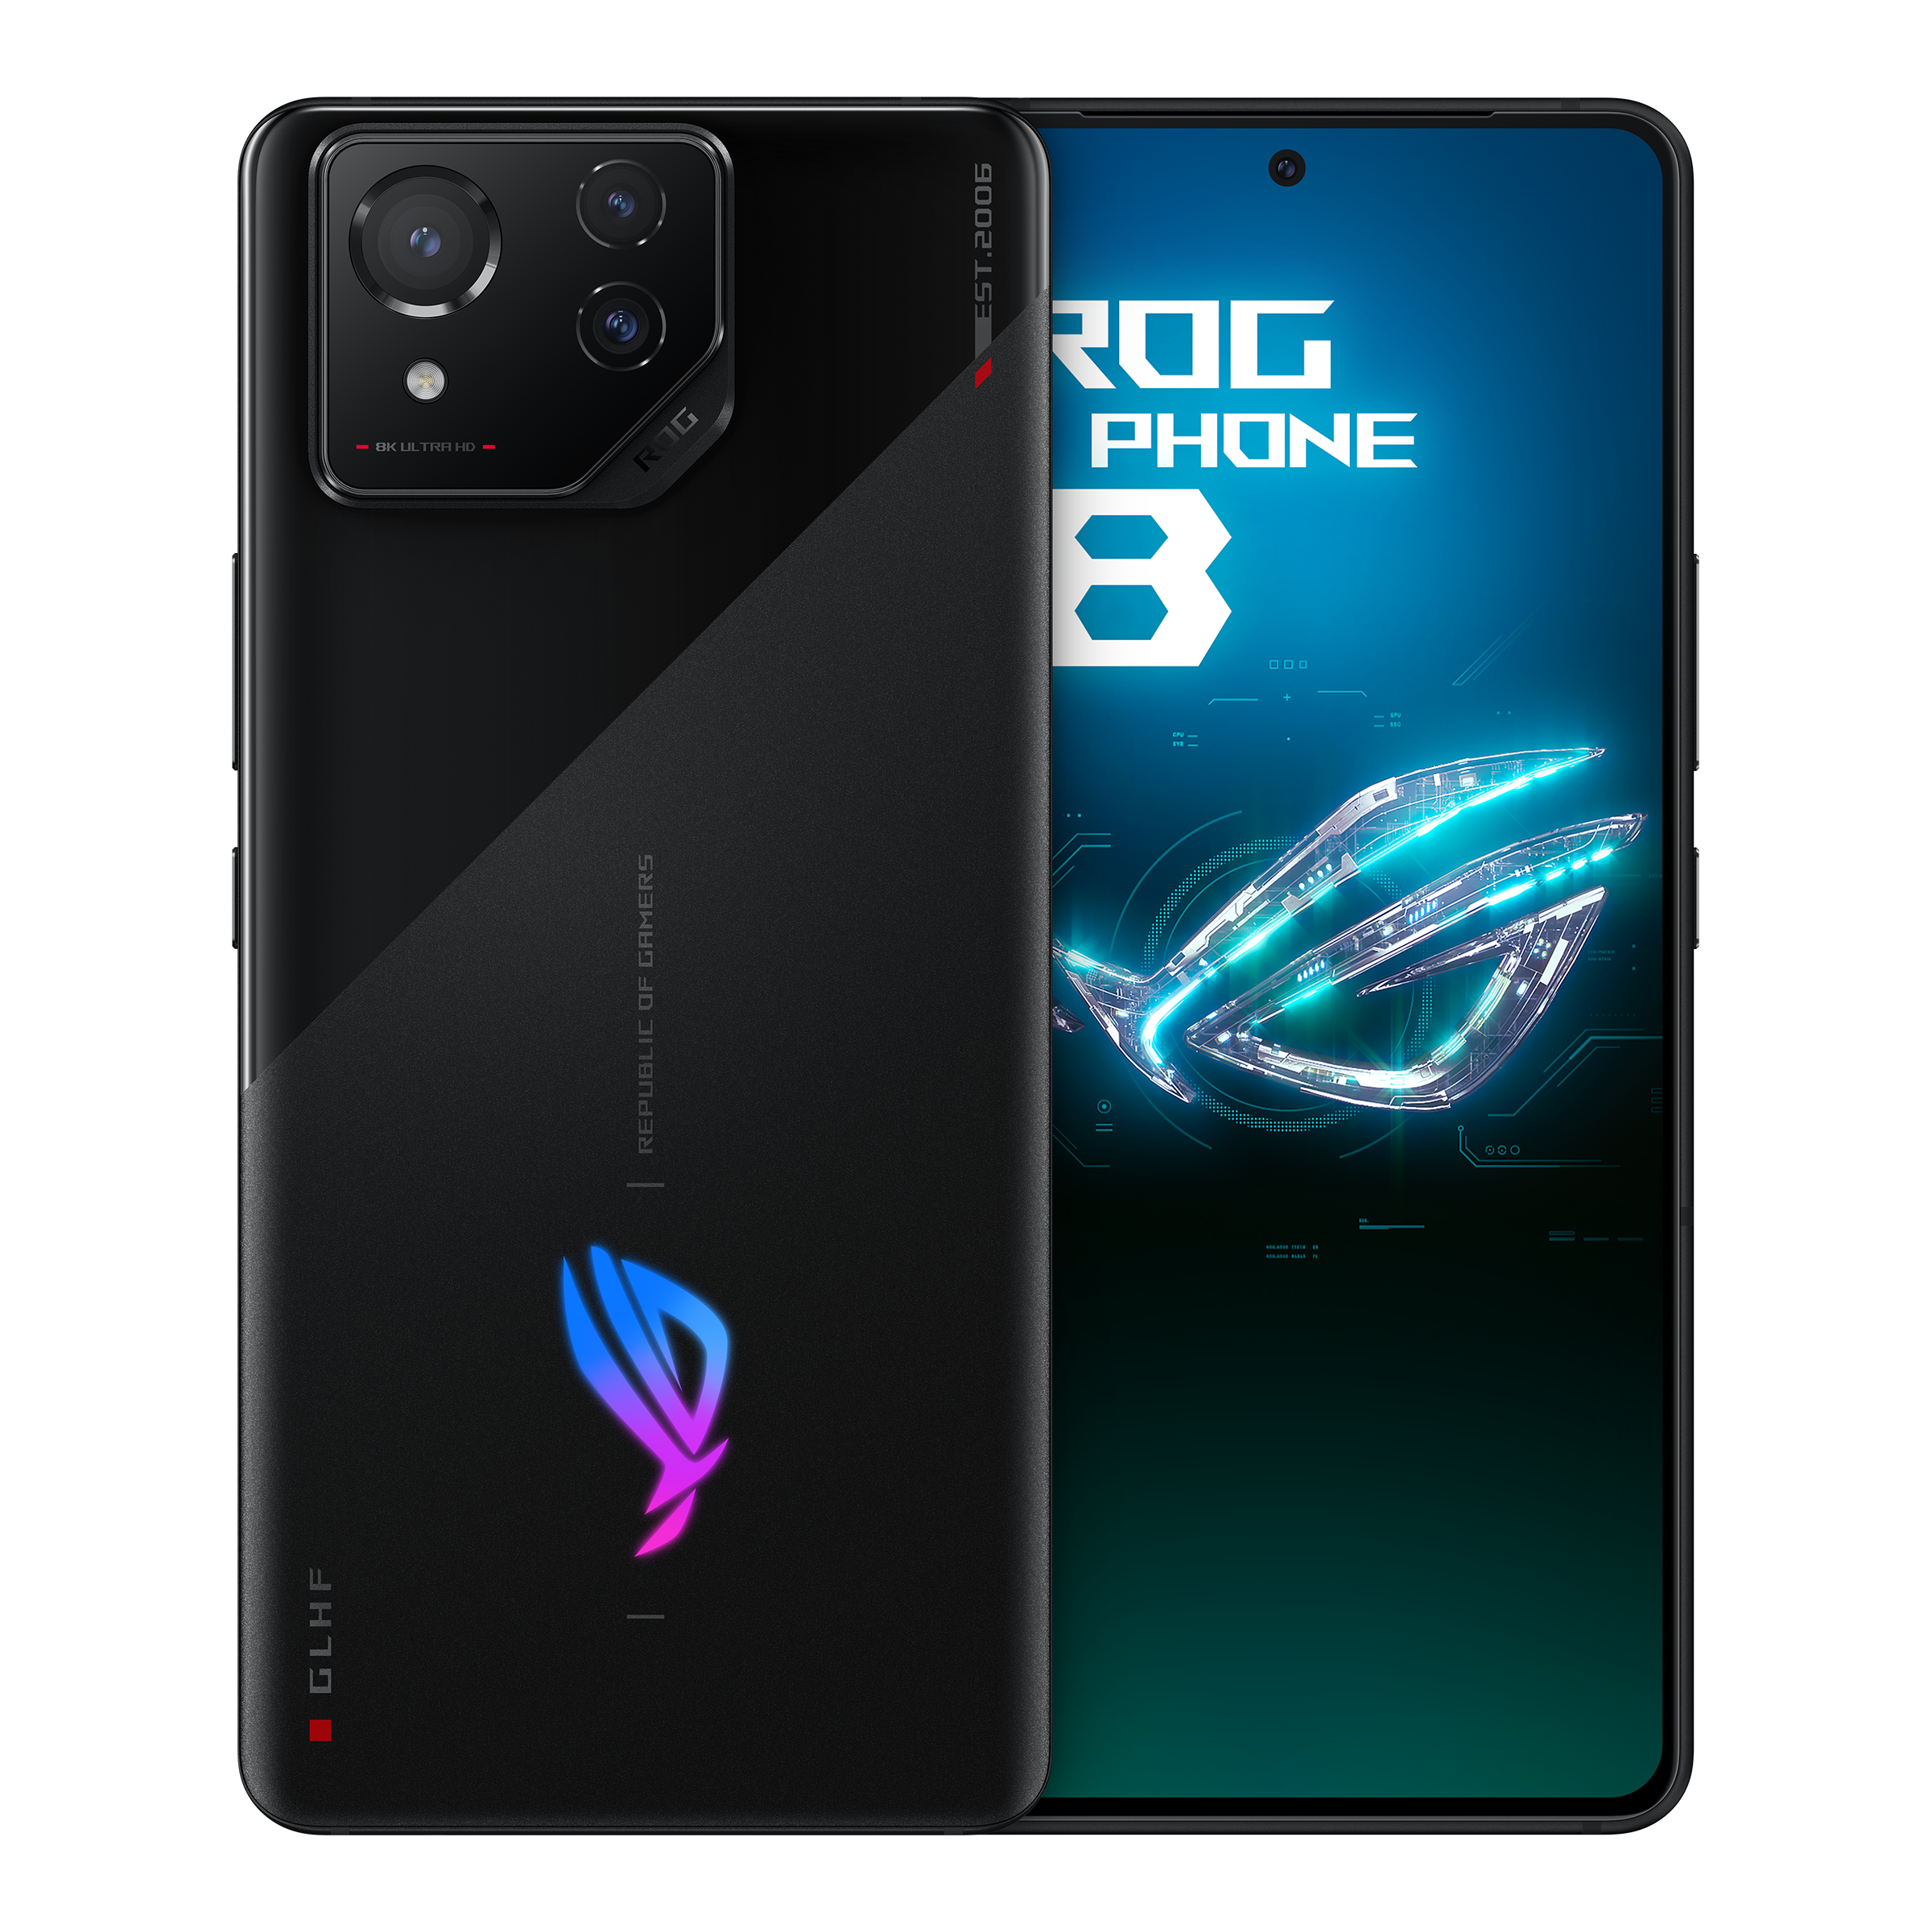 ASUS ROG anuncia su nueva serie de teléfonos móviles gamer, ROG